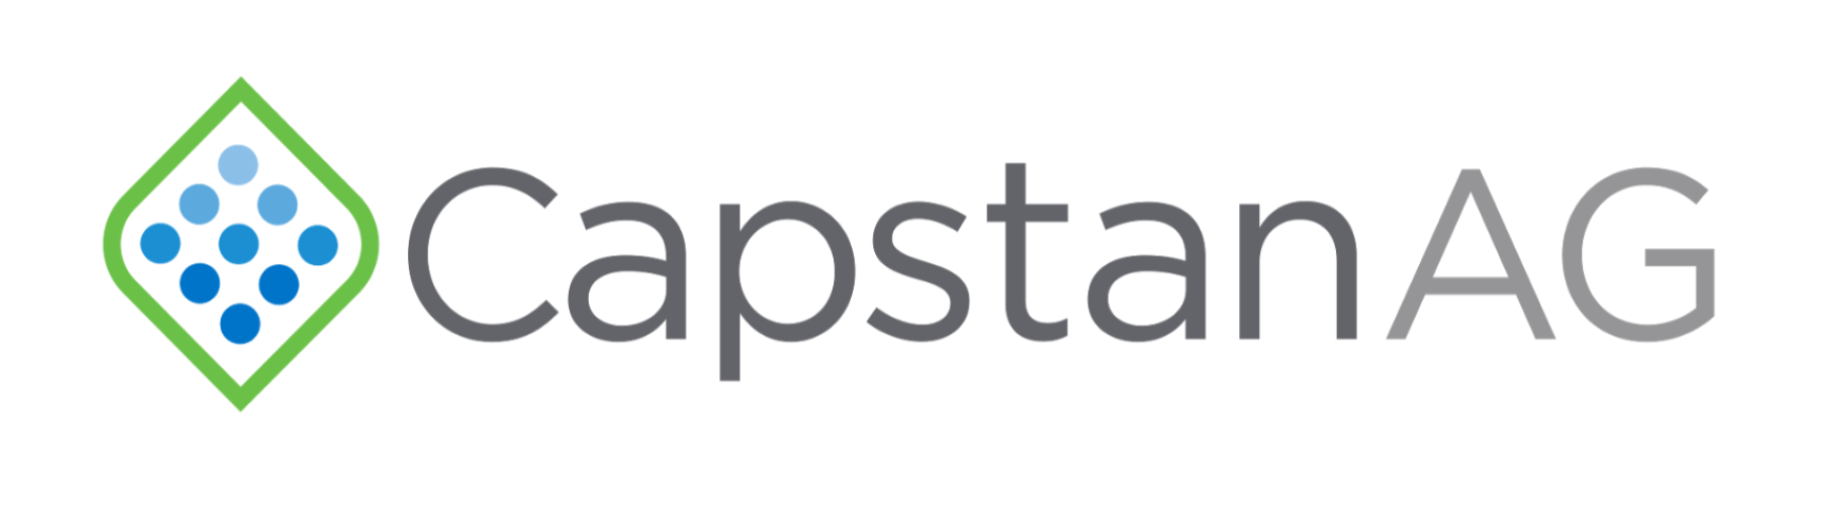 Capstan Logo v2 - Big Border.png